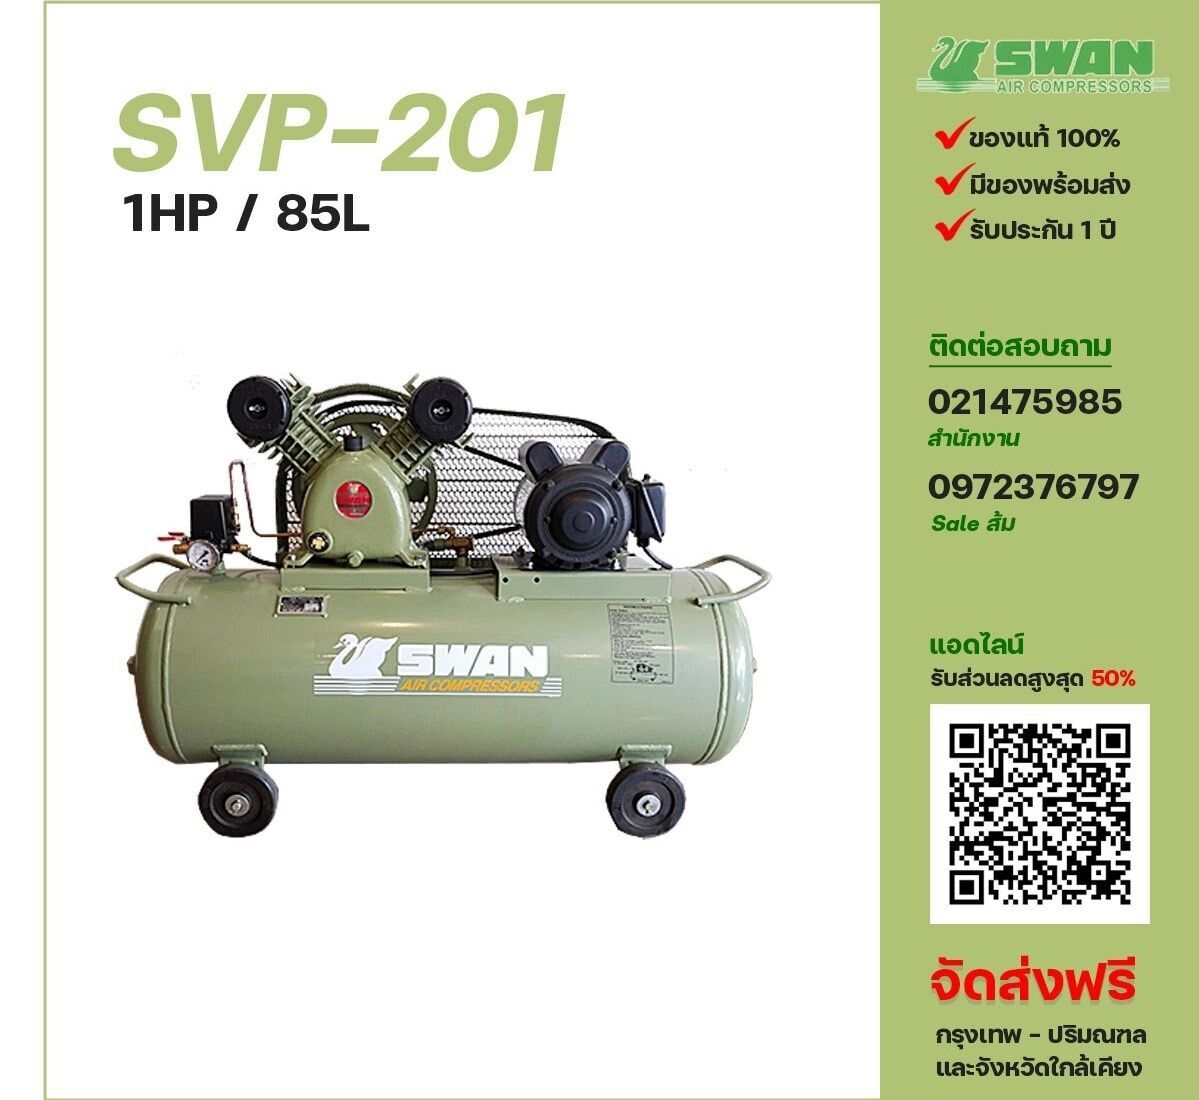 ปั๊มลมสวอน SWAN SVP-201 220V/380V ปั๊มลมลูกสูบ ขนาด 2 สูบ 1 แรงม้า 85 ลิตร SWAN พร้อมมอเตอร์ ไฟ 220V/380V ส่งฟรี กรุงเทพฯ-ปริมณฑล รับประกัน 1 ปี